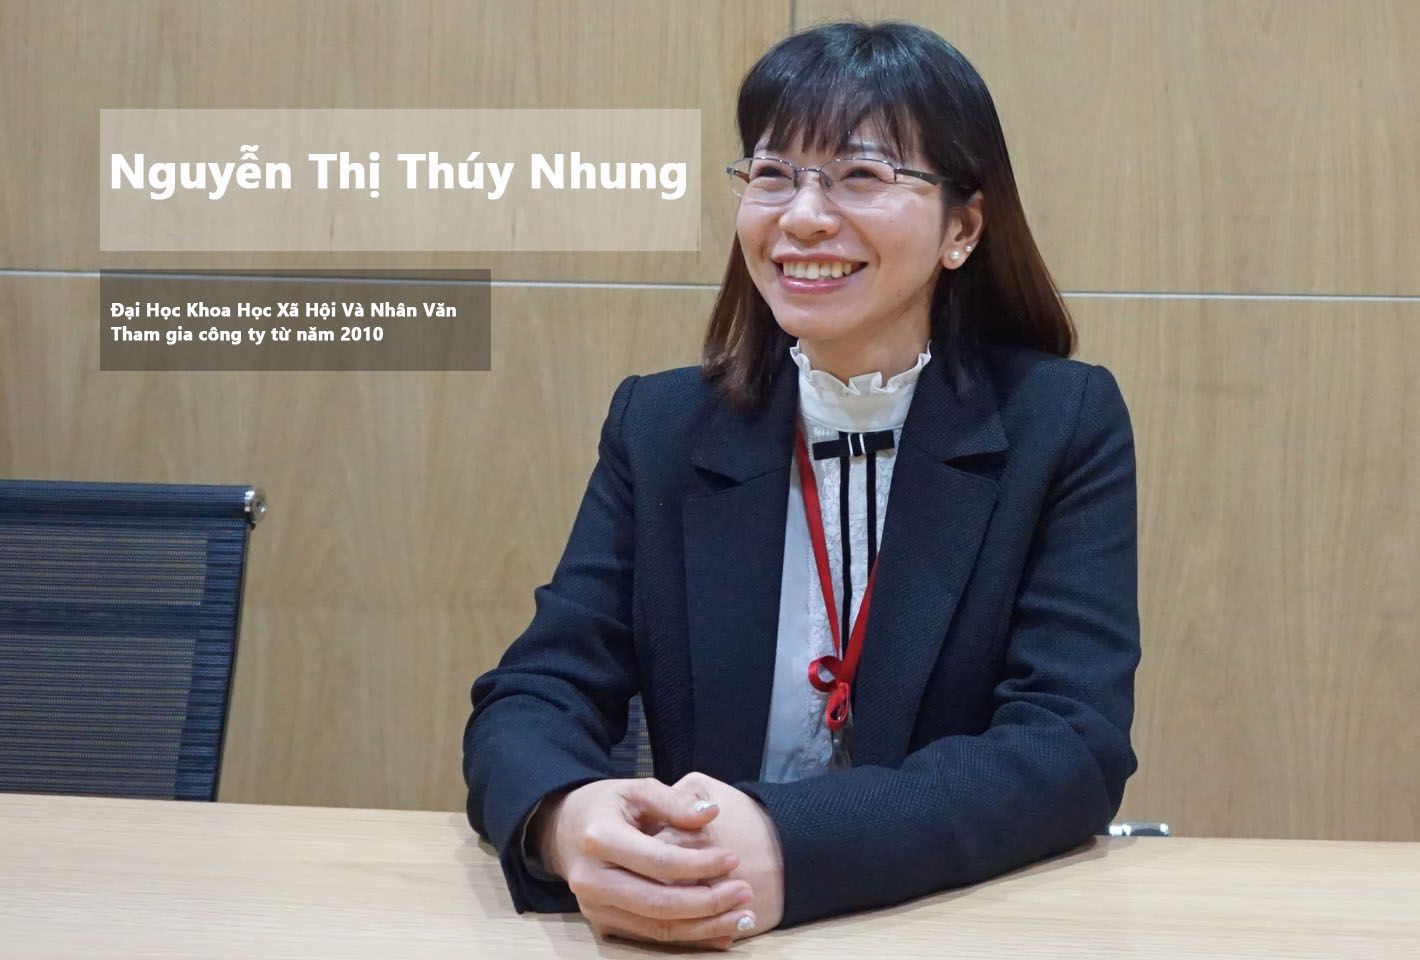 Chị Nguyễn Thị Thúy Nhung cựu sinh viên trường Đại Học Khoa Học Xã Hội và Nhân Văn TPHCM.